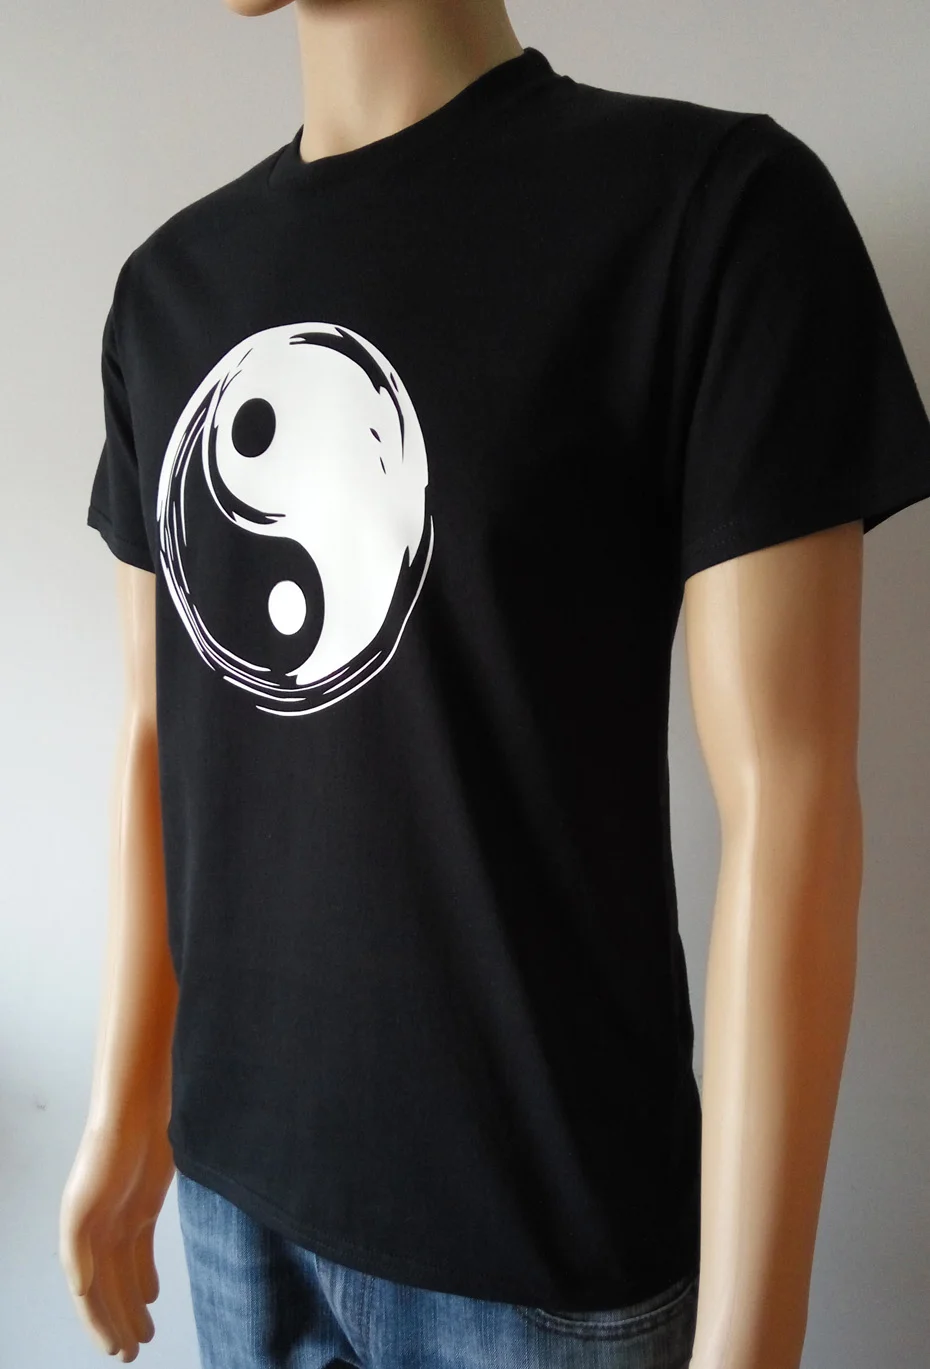 YUANQISHUN модные летние брендовые футболки мужские топы китайские Tai Chi Yin Yang мужские футболки с принтом Удобные Хлопковые футболки